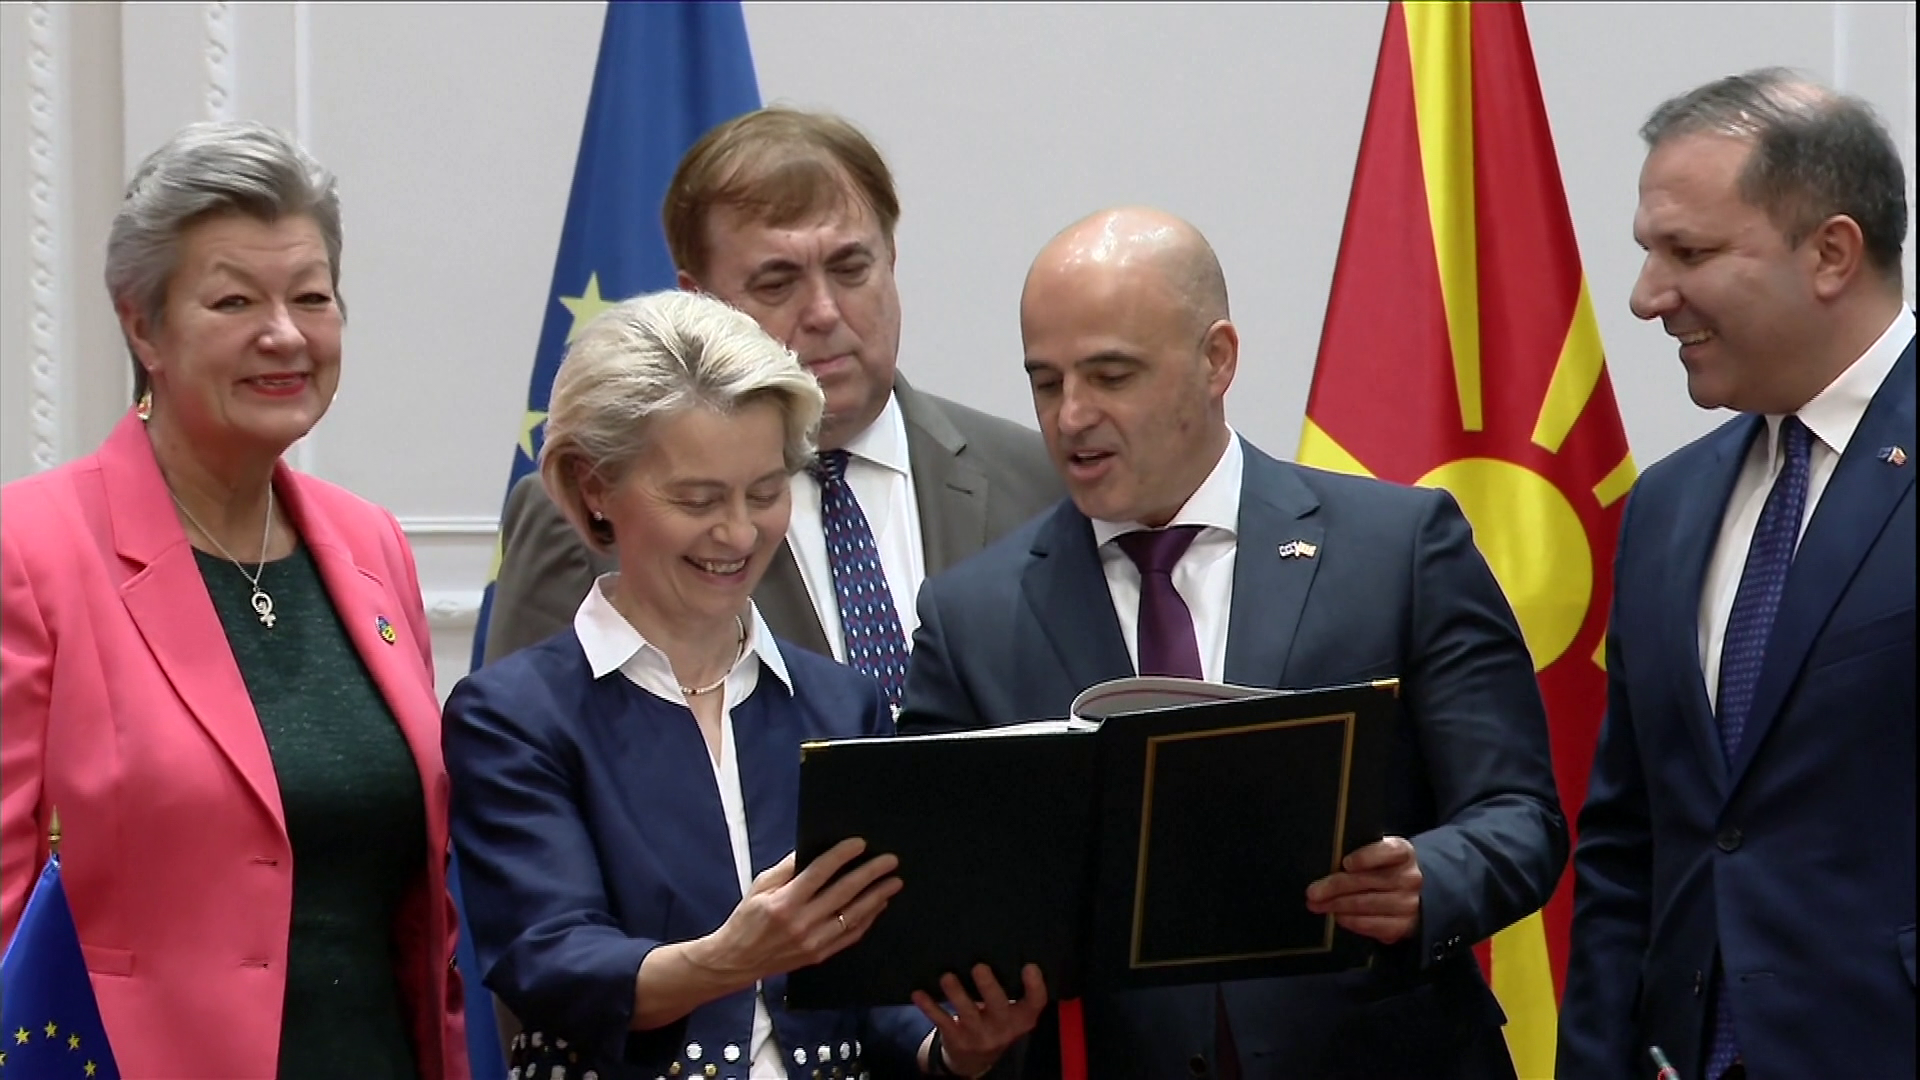 Határvédelmi megállapodást írt alá Észak-Macedónia és az Európai Unió 